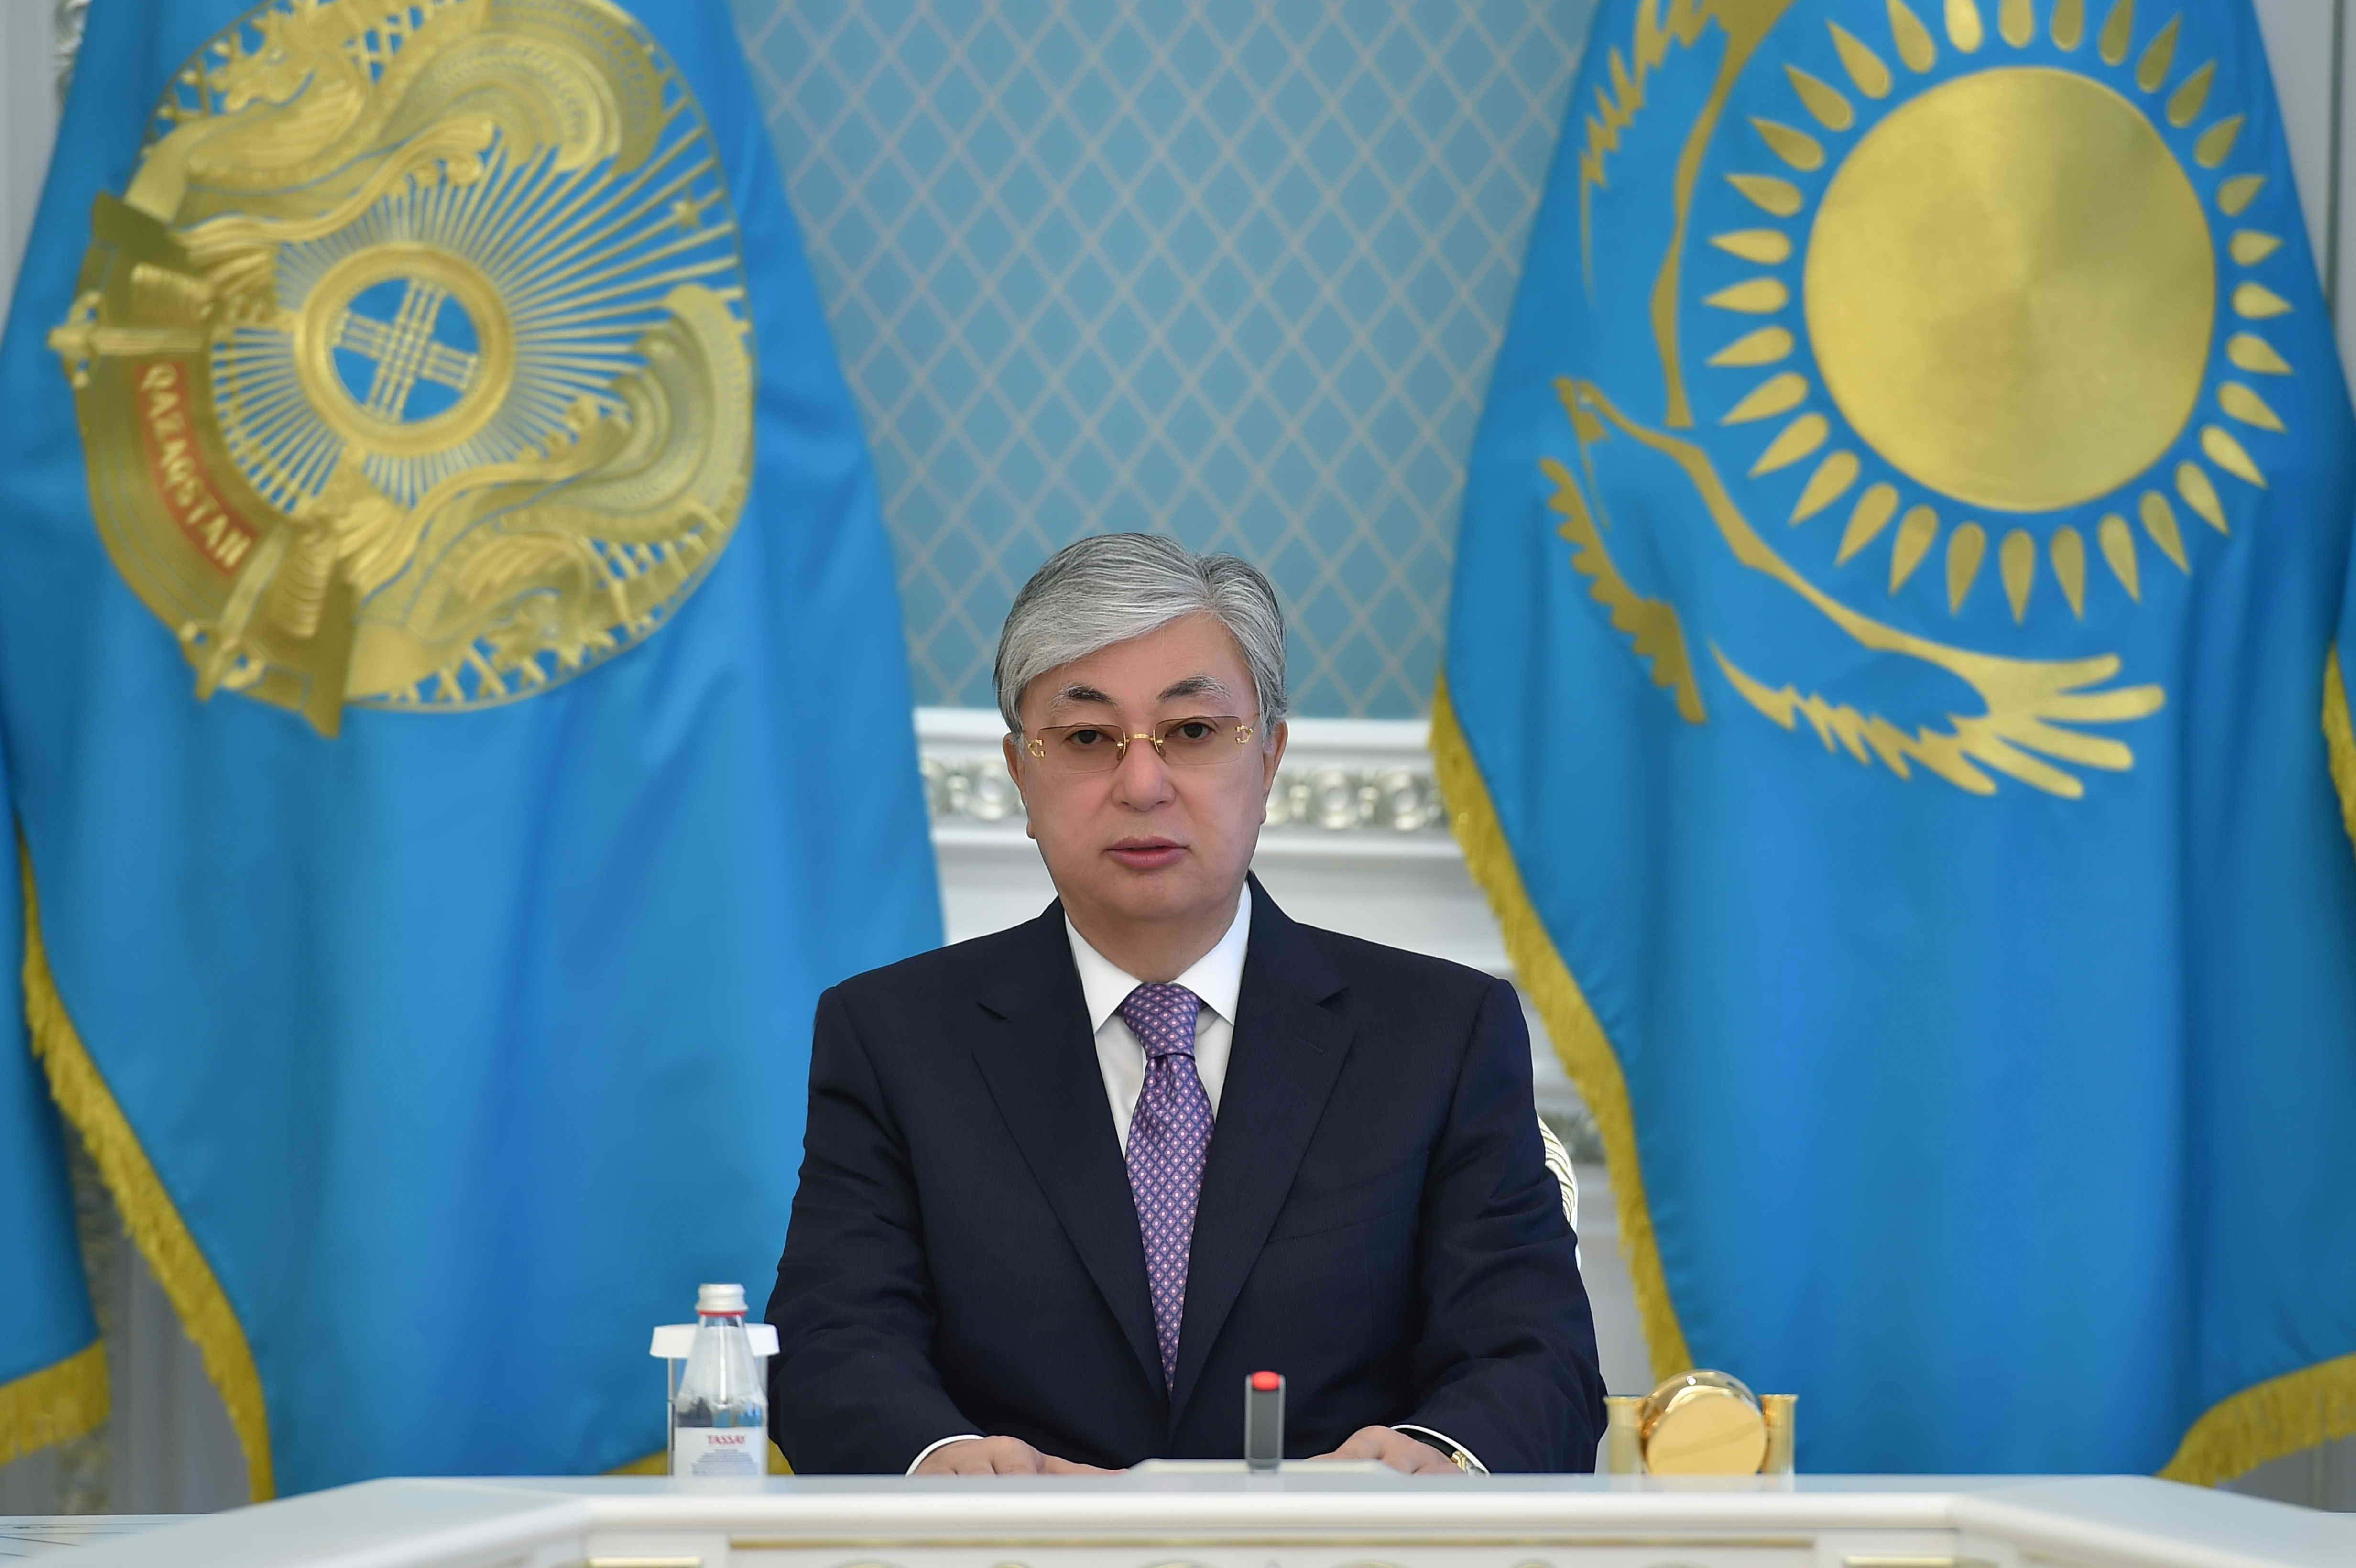 Касым-Жомарт Токаев поздравил казахстанцев с Днем Независимости